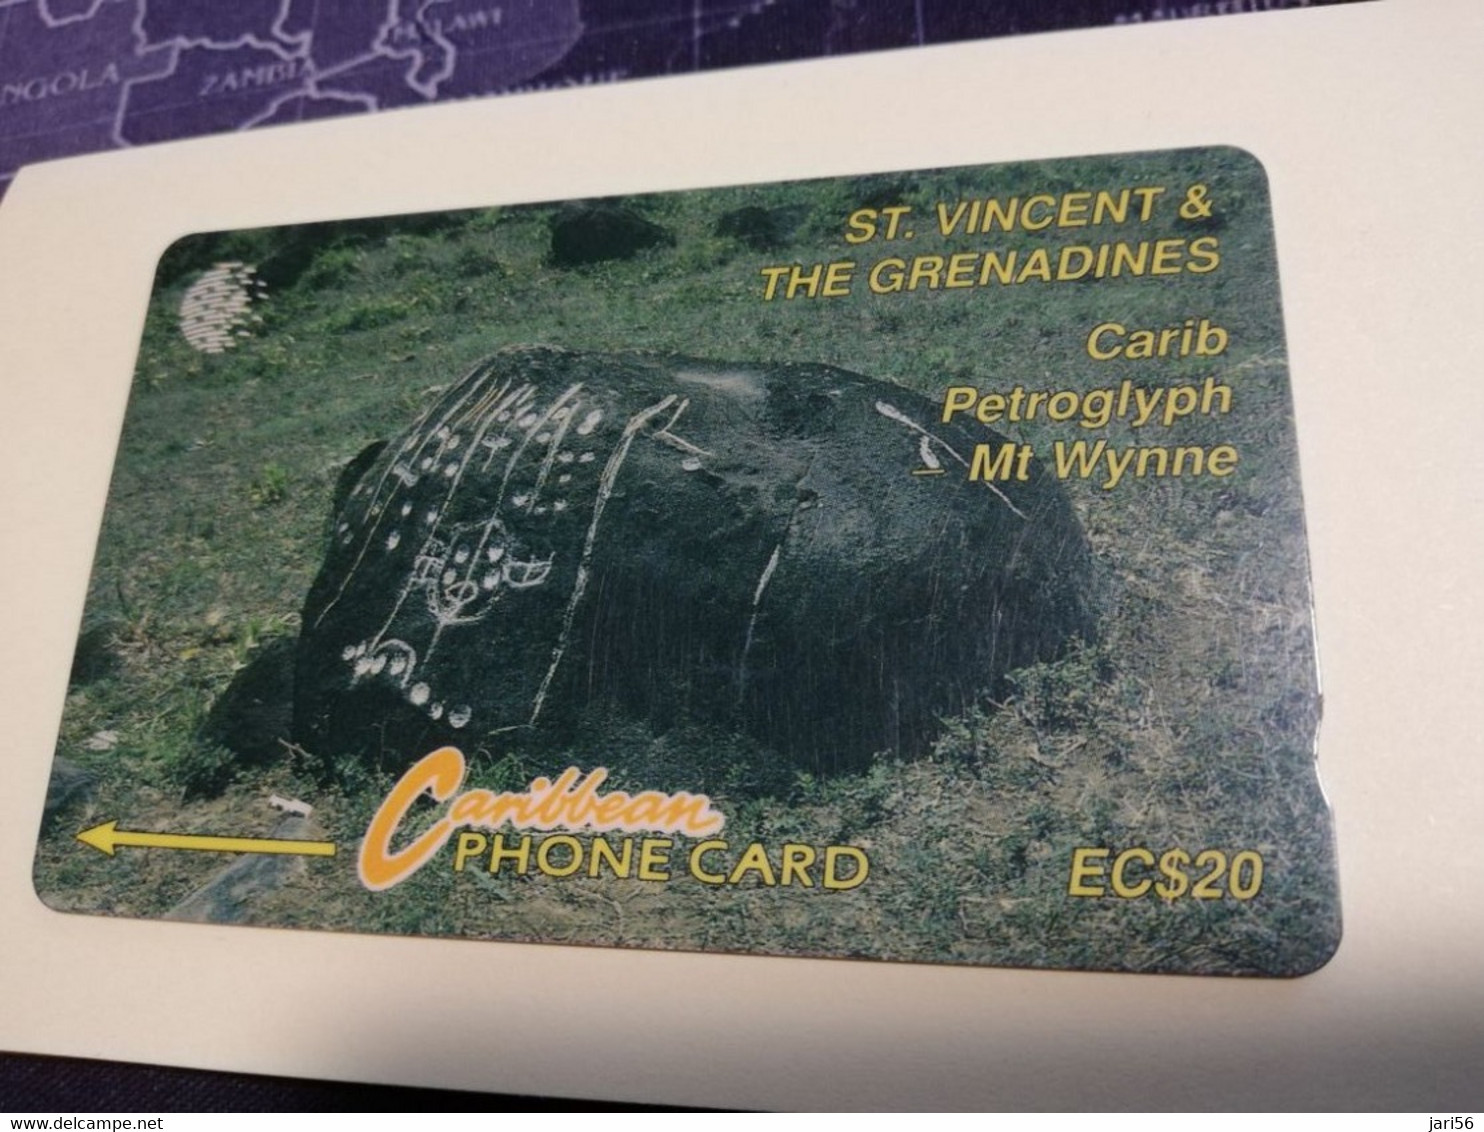 ST VINCENT & GRENADINES  GPT CARD   $ 20,- 10CSVB   CARIB PETROGLYPH       C&W    Fine Used  Card  **3366** - Saint-Vincent-et-les-Grenadines